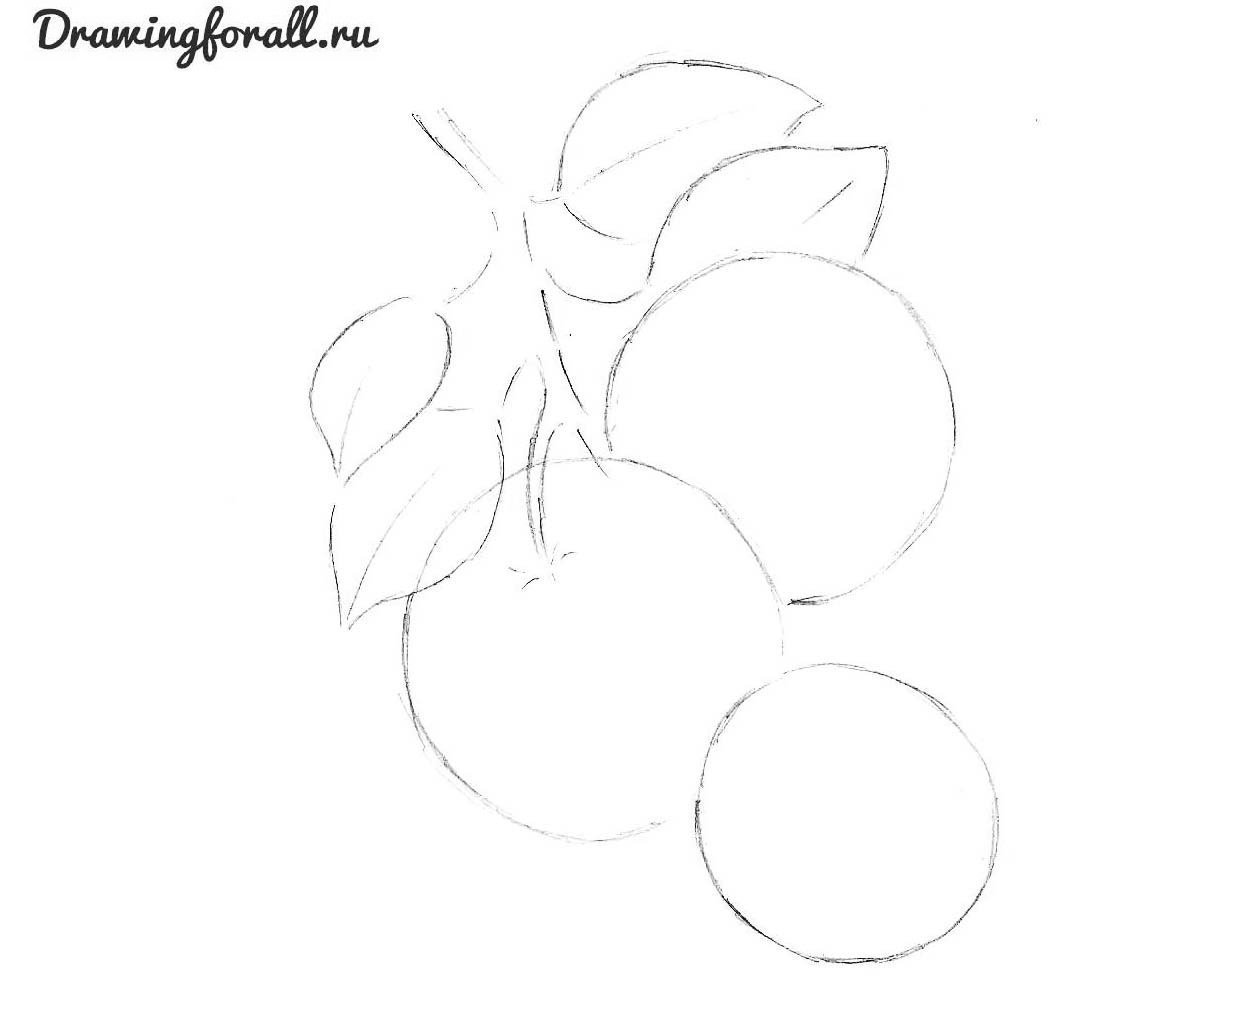 Яблоко на ветке рисунок карандашом